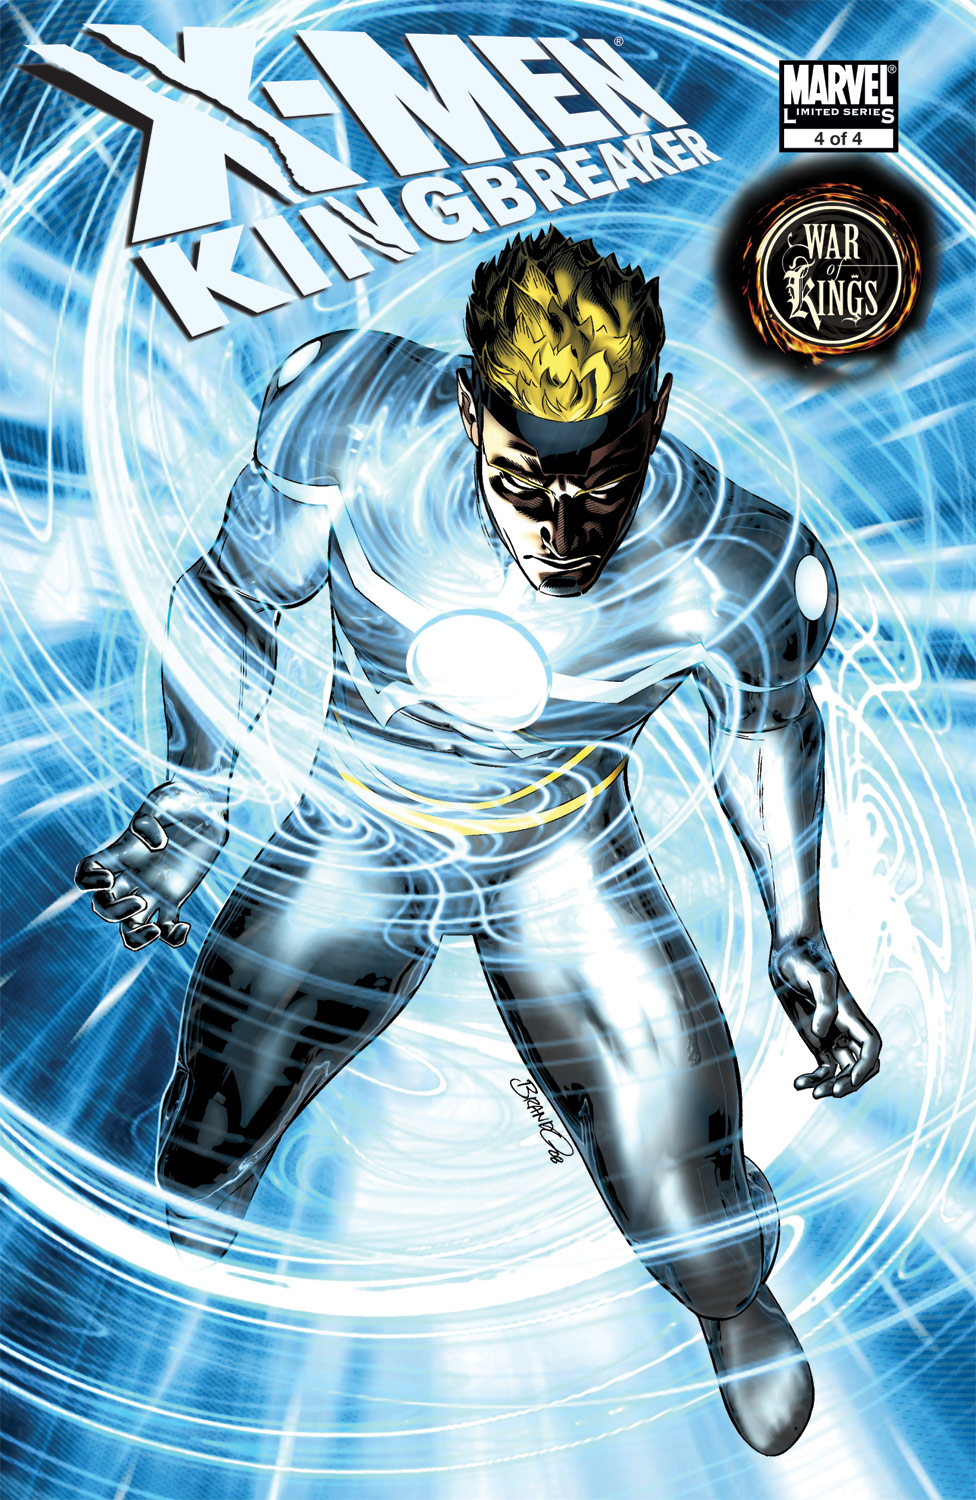 X-Men: Kingbreaker issue 4 - Page 1